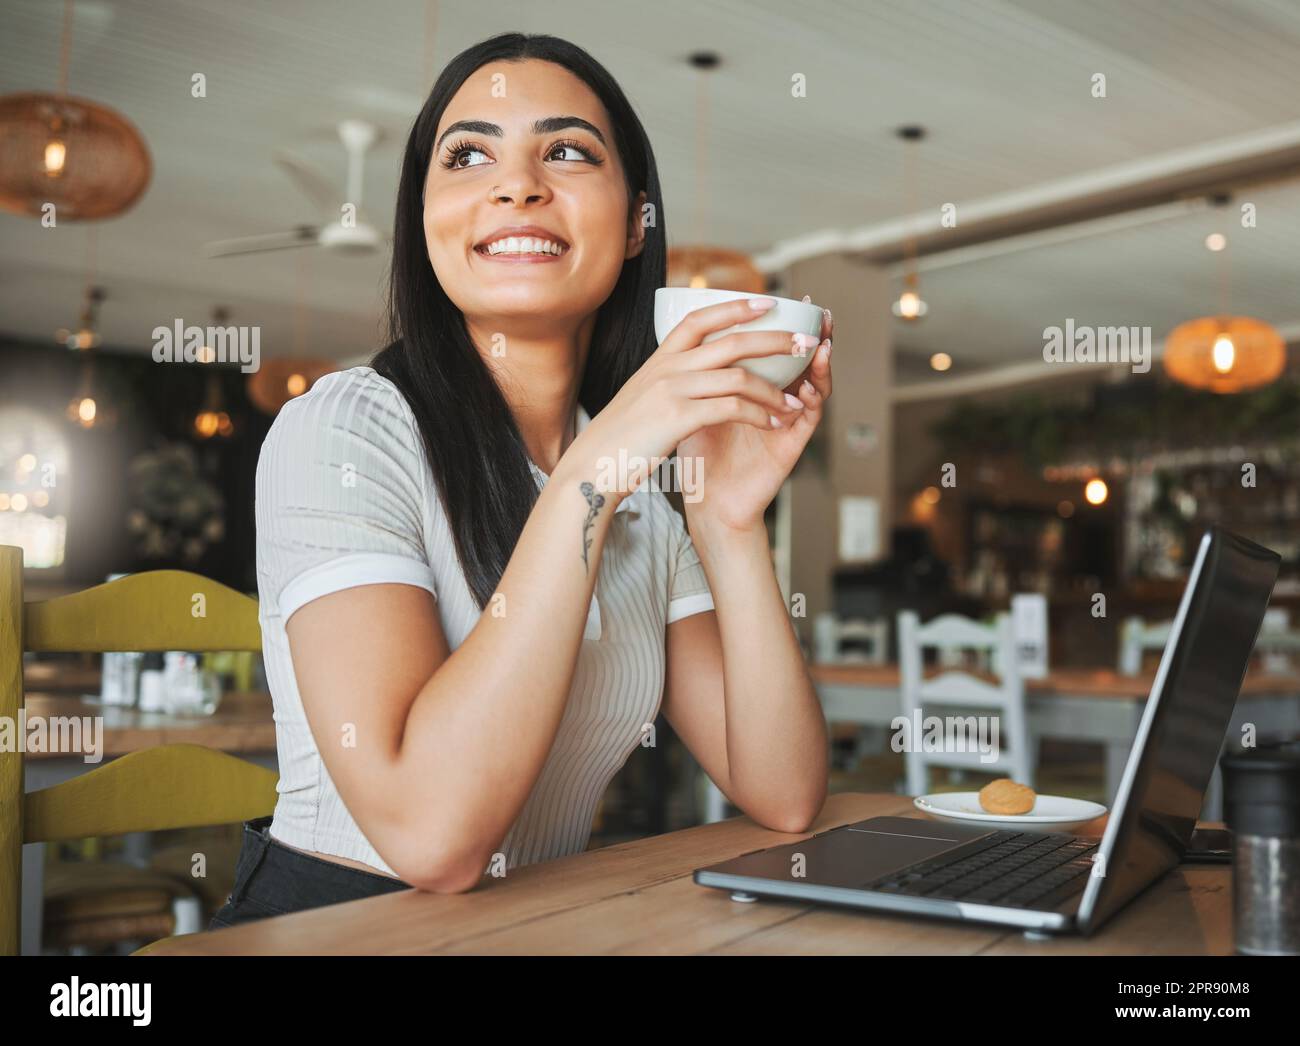 Lavorare per una vita di cui può essere orgogliosa. Una giovane donna d'affari che si prende una pausa dal lavoro per gustare il caffè in un caffè. Foto Stock